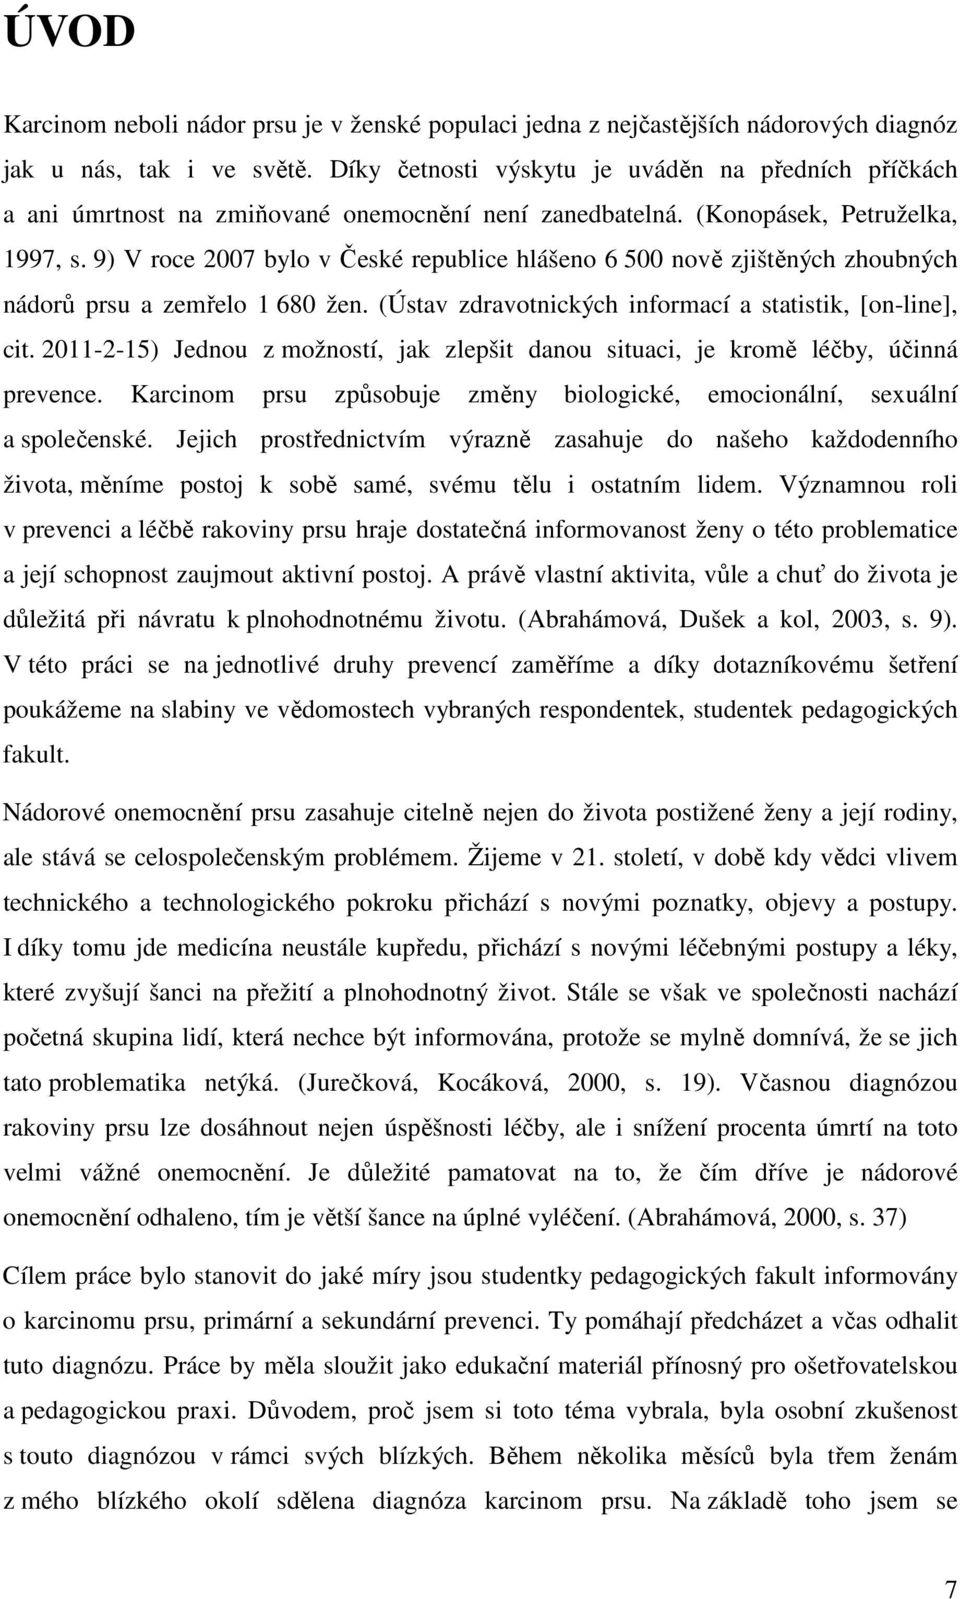 9) V roce 2007 bylo v České republice hlášeno 6 500 nově zjištěných zhoubných nádorů prsu a zemřelo 1 680 žen. (Ústav zdravotnických informací a statistik, [on-line], cit.